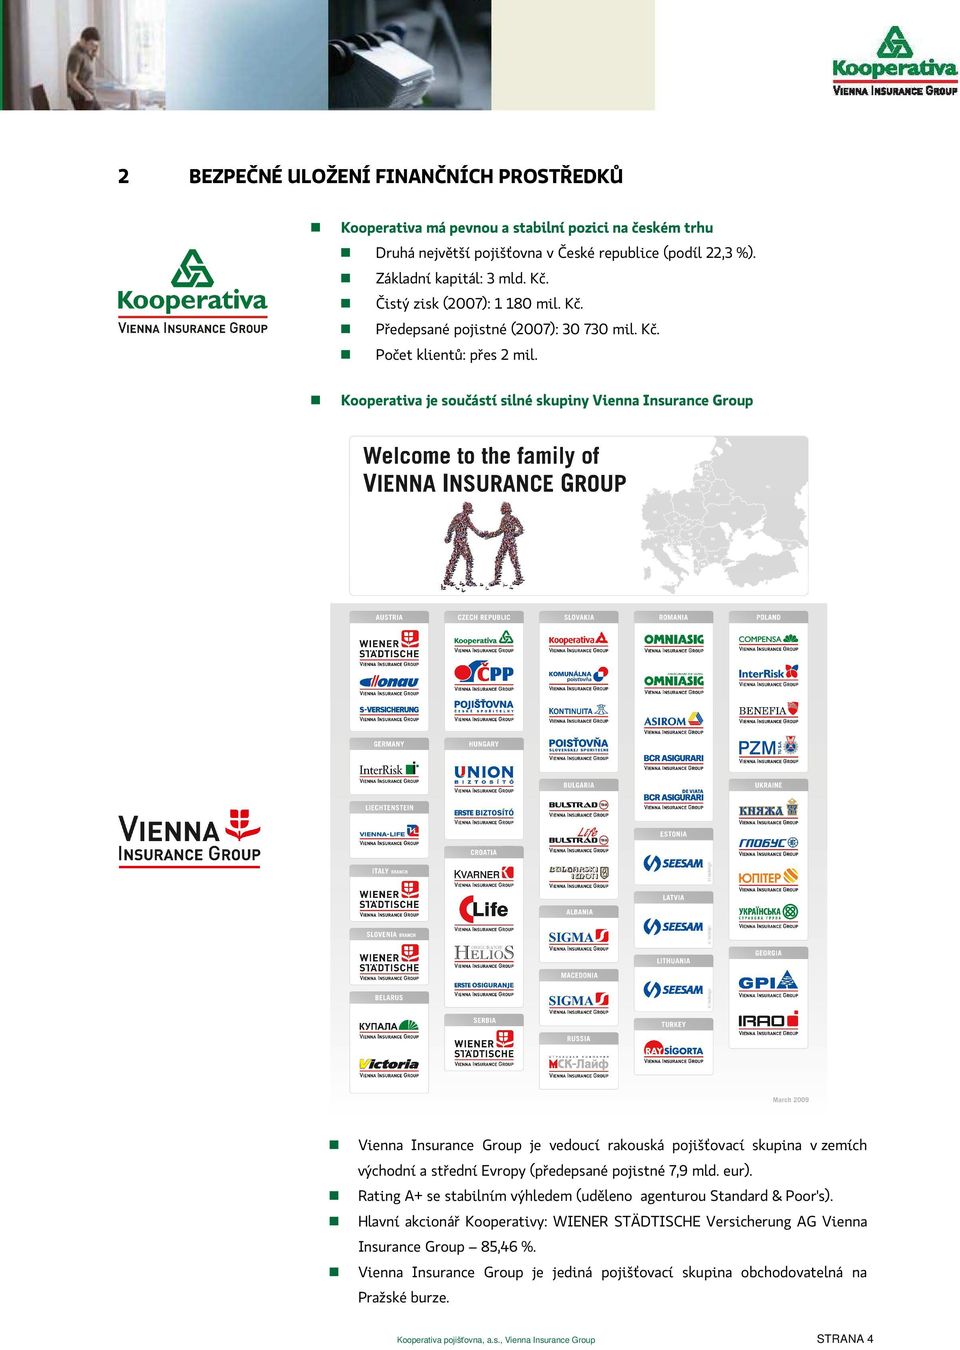 Kooperativa je součástí silné skupiny Vienna Insurance Group Vienna Insurance Group je vedoucí rakouská pojišťovací skupina v zemích východní a střední Evropy (předepsané pojistné 7,9 mld. eur).